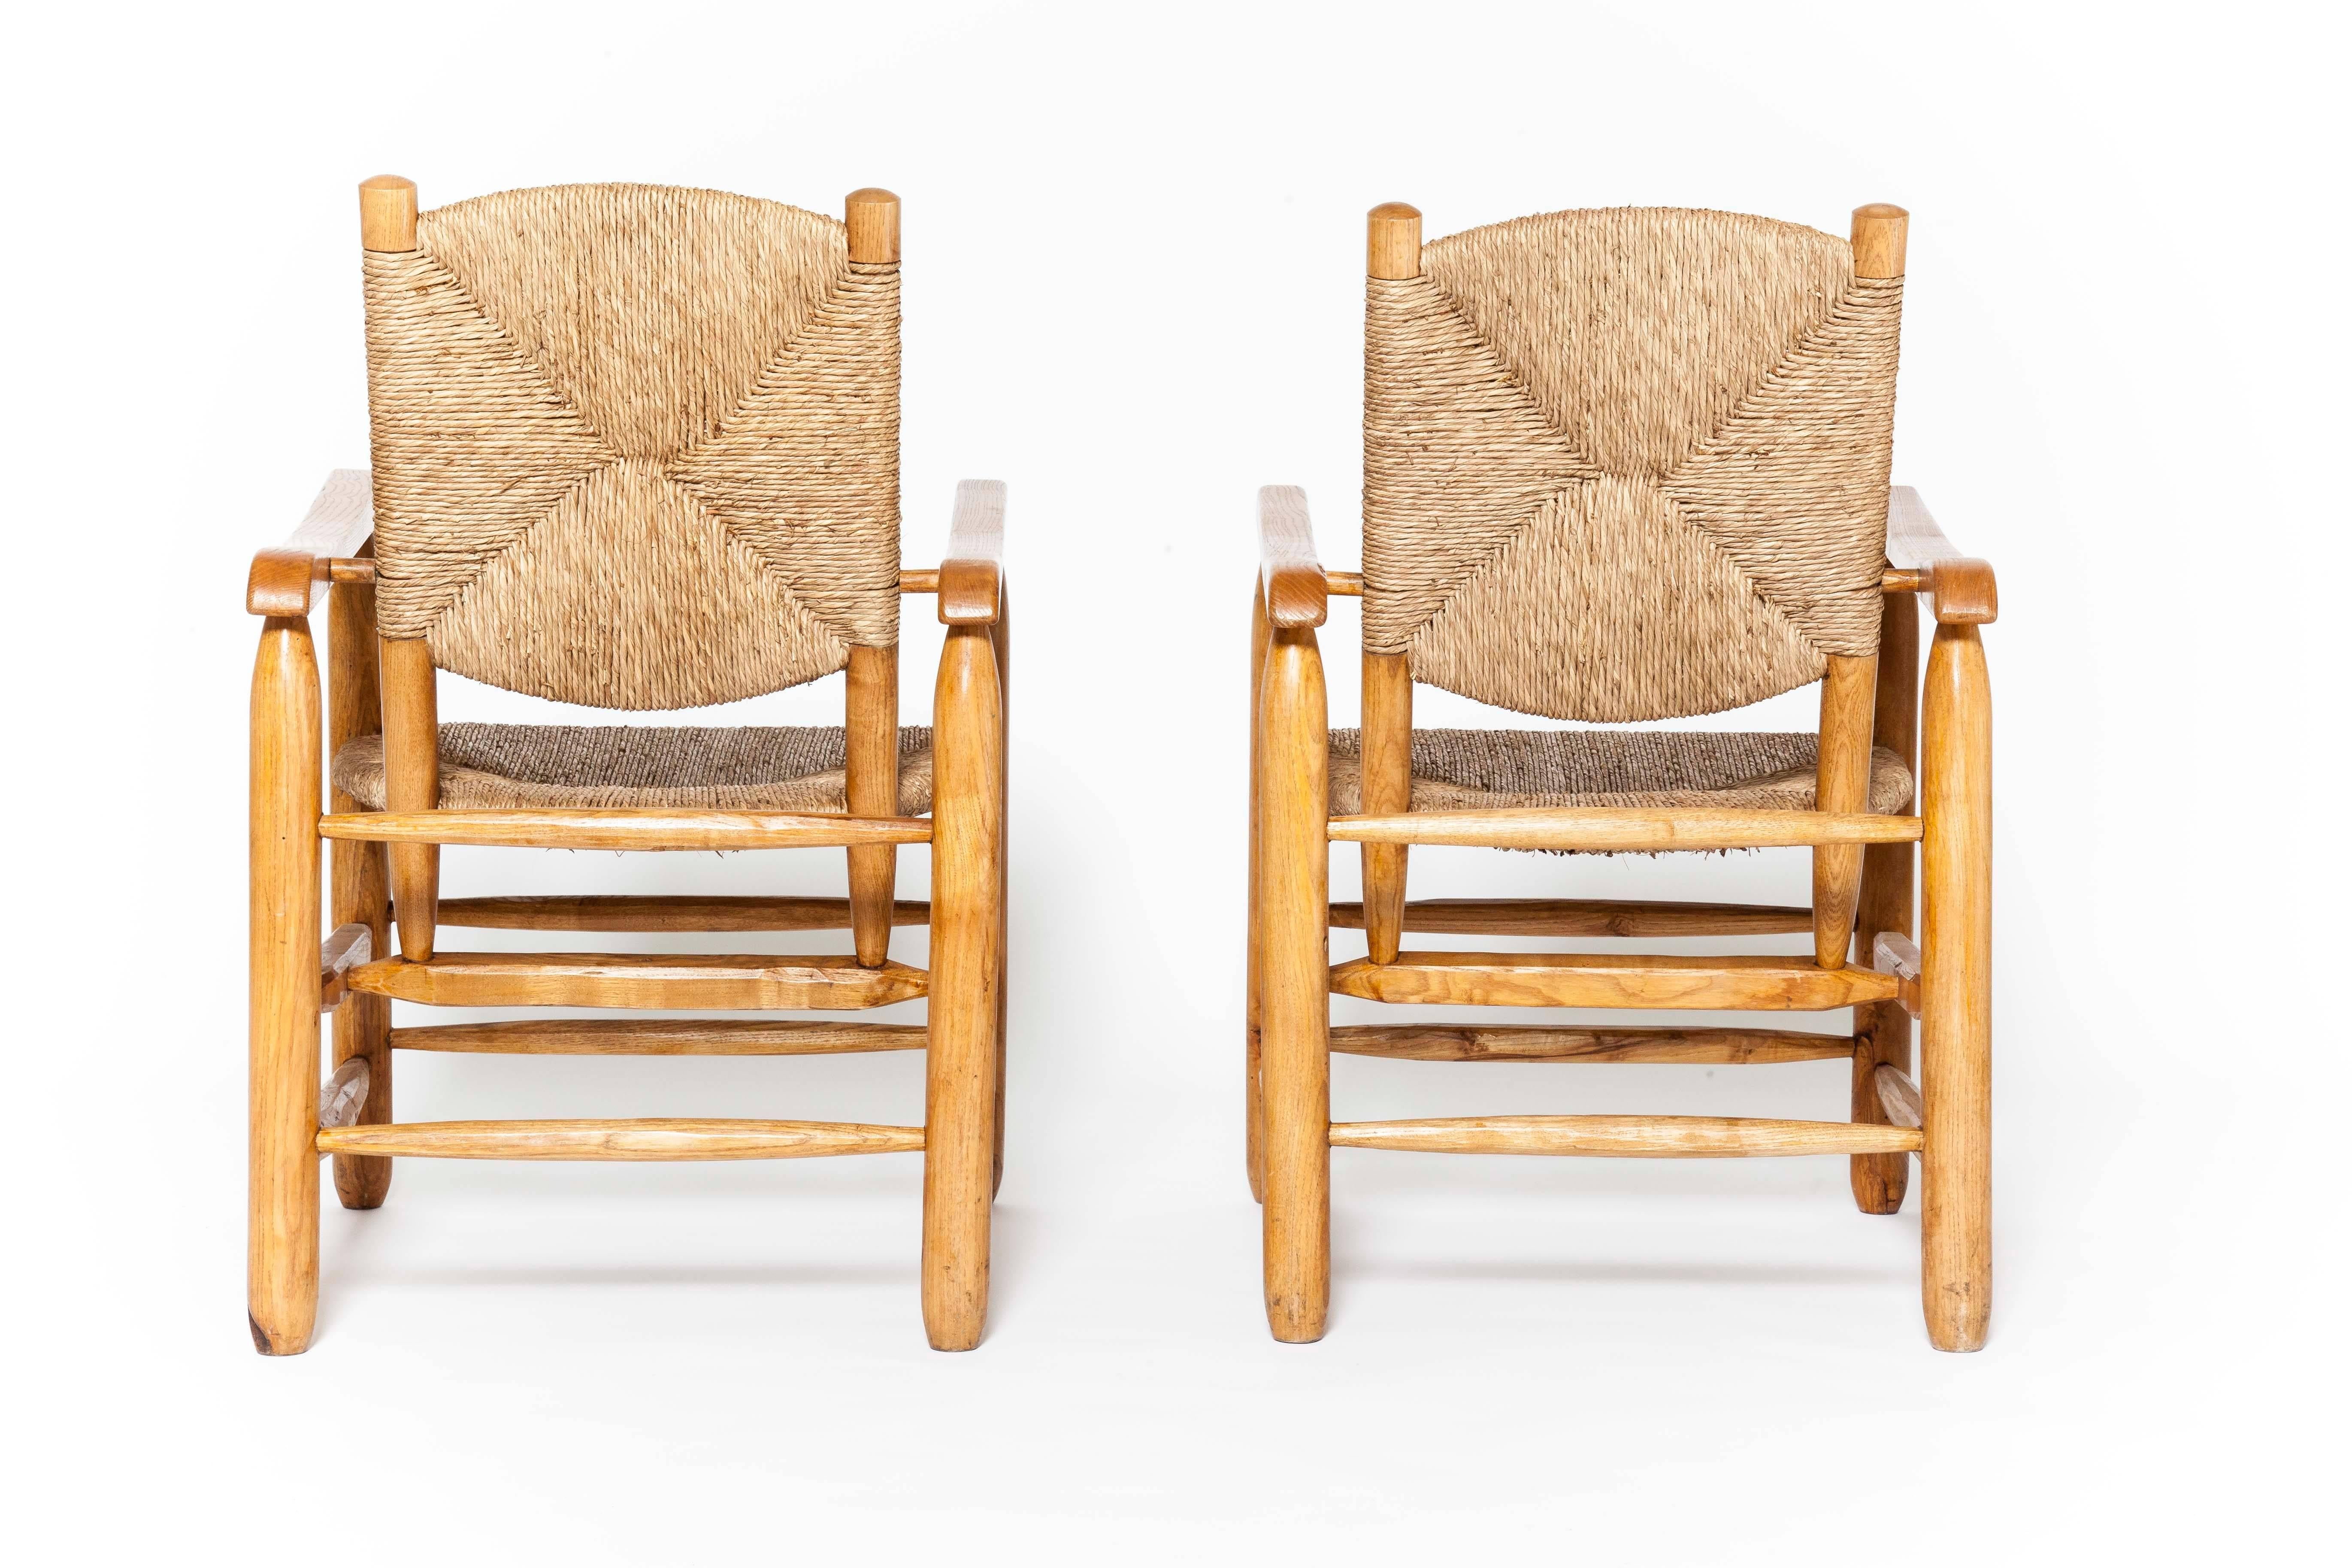 Charlotte Perriand, pair of rush armchairs.
Wood, rush.